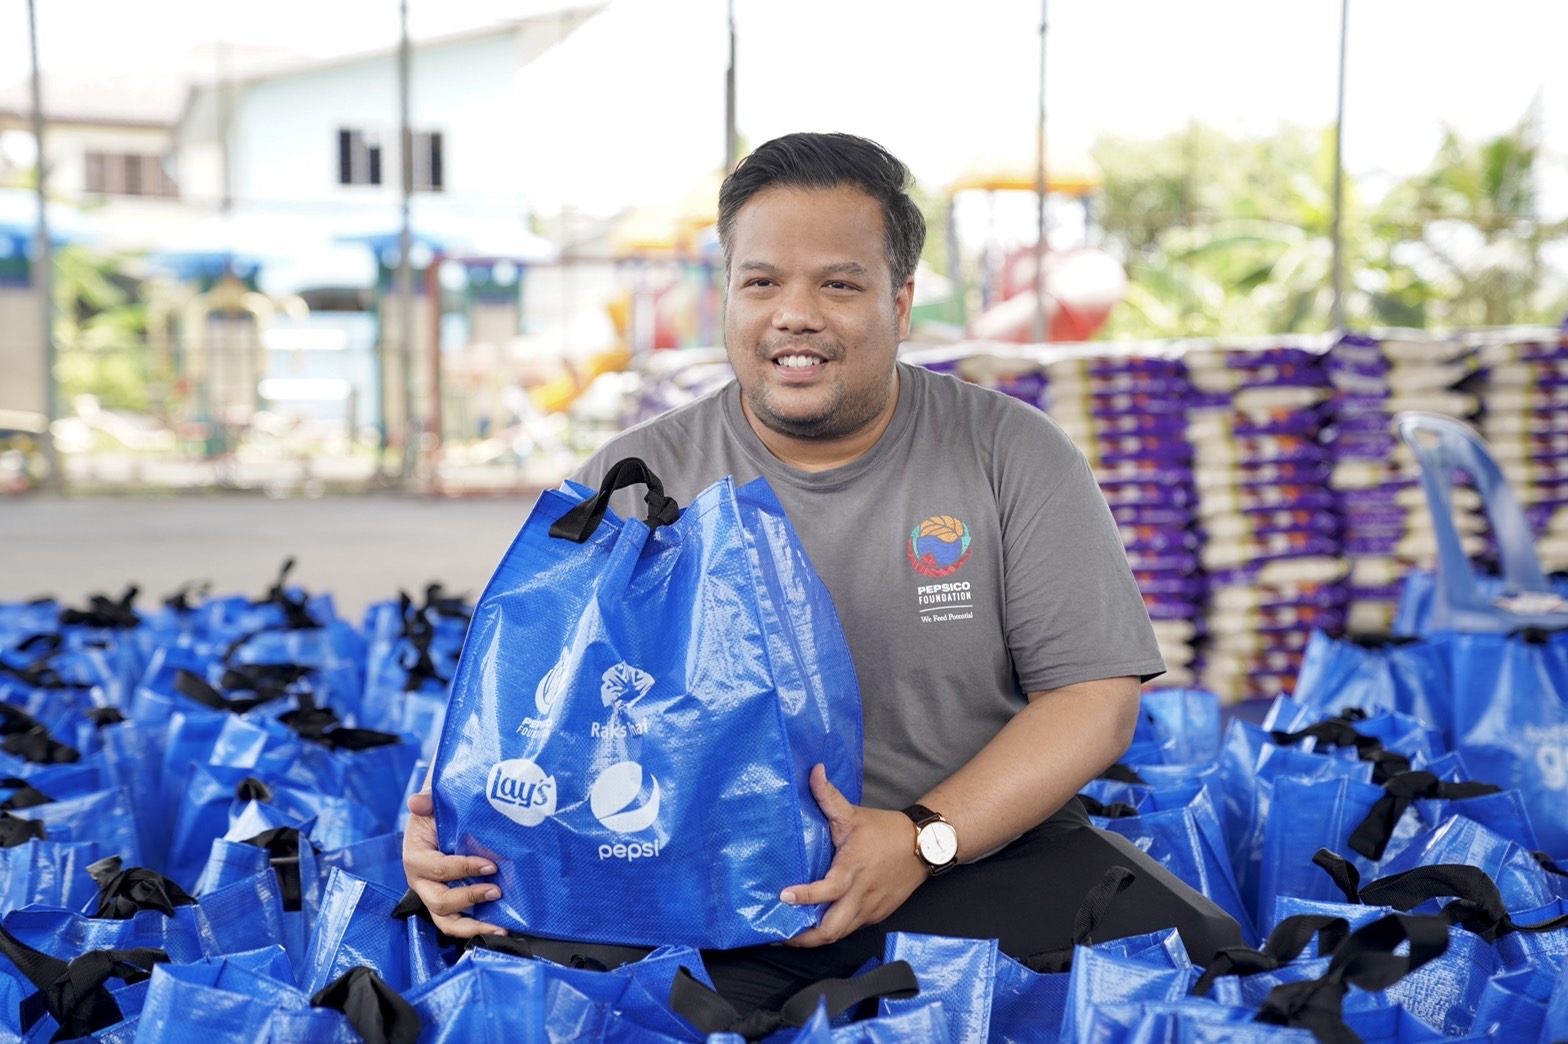 อาหารล้านมื้อเพื่อกำลังใจ ให้คนไทยสู้ภัยโควิด-19 โดย PepsiCo